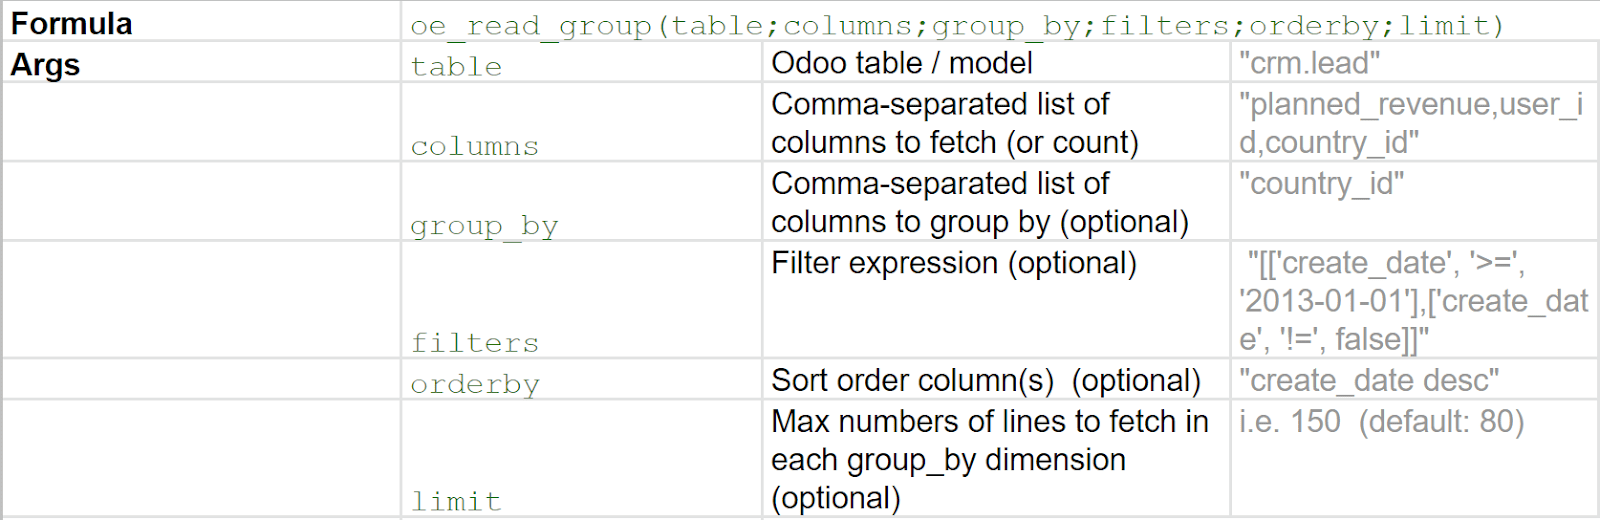 在Odoo中使用的分组和参数示例表